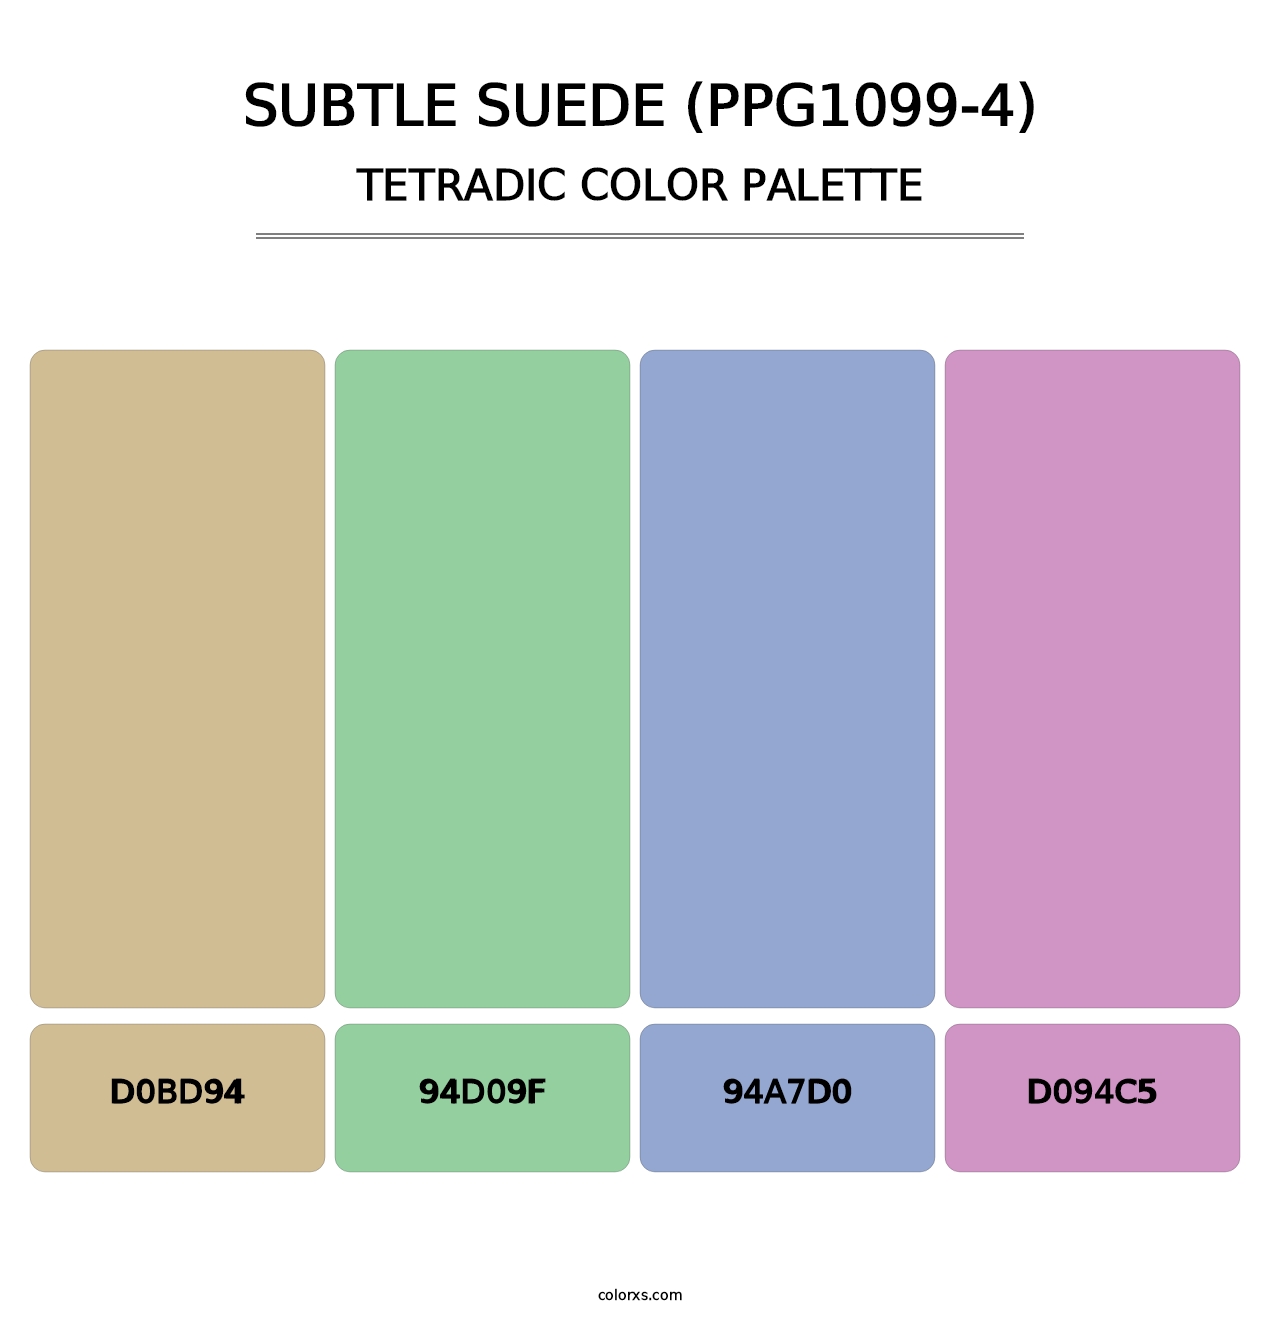 Subtle Suede (PPG1099-4) - Tetradic Color Palette